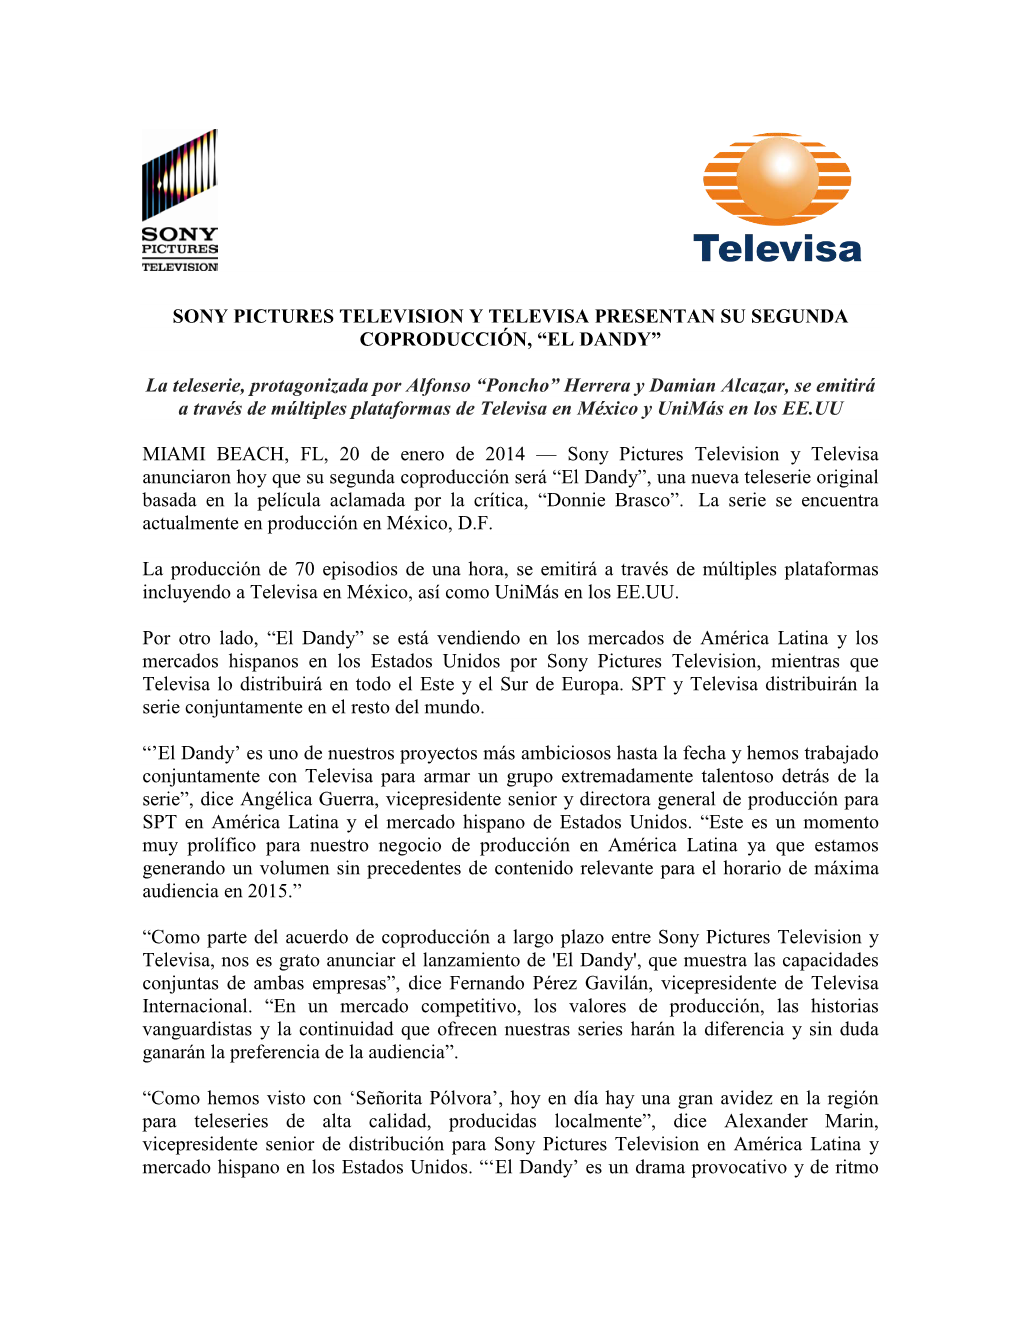 Sony Pictures Television Y Televisa Presentan Su Segunda Coproducción, “El Dandy”